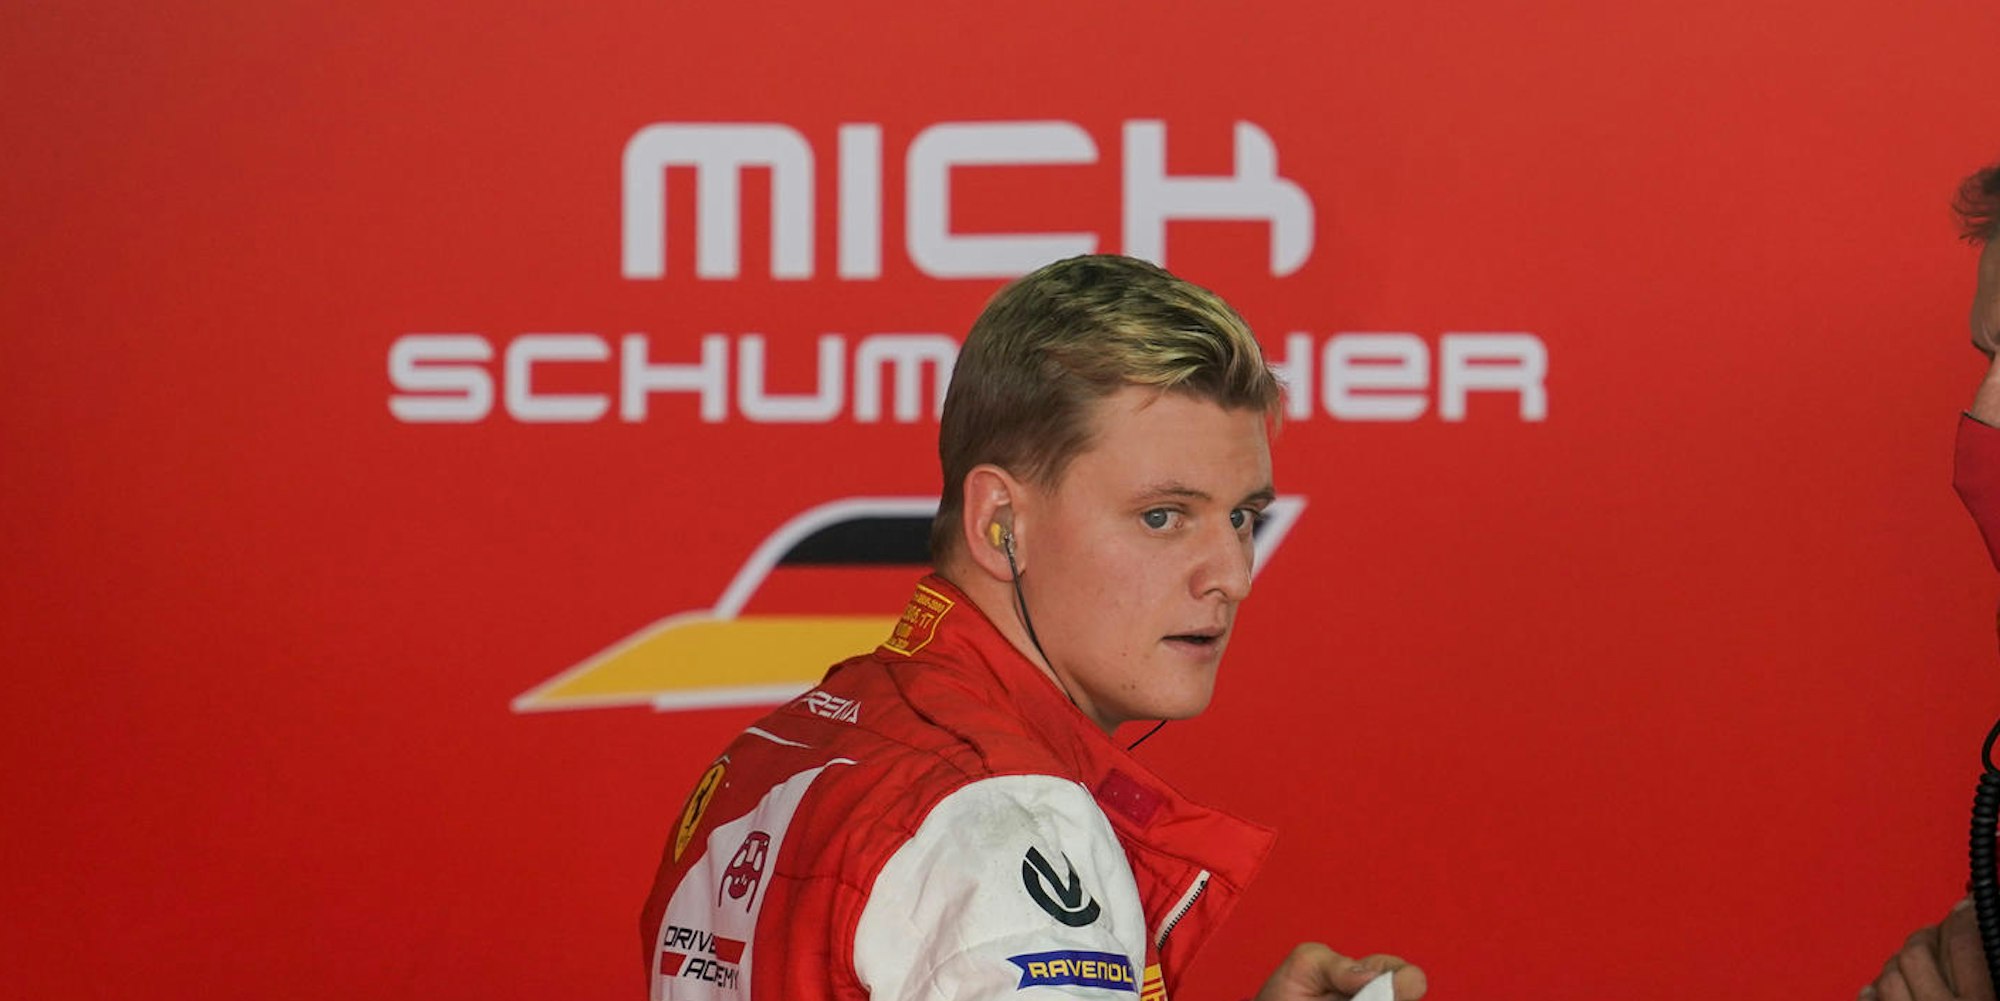 Mick-Schumacher-Tost